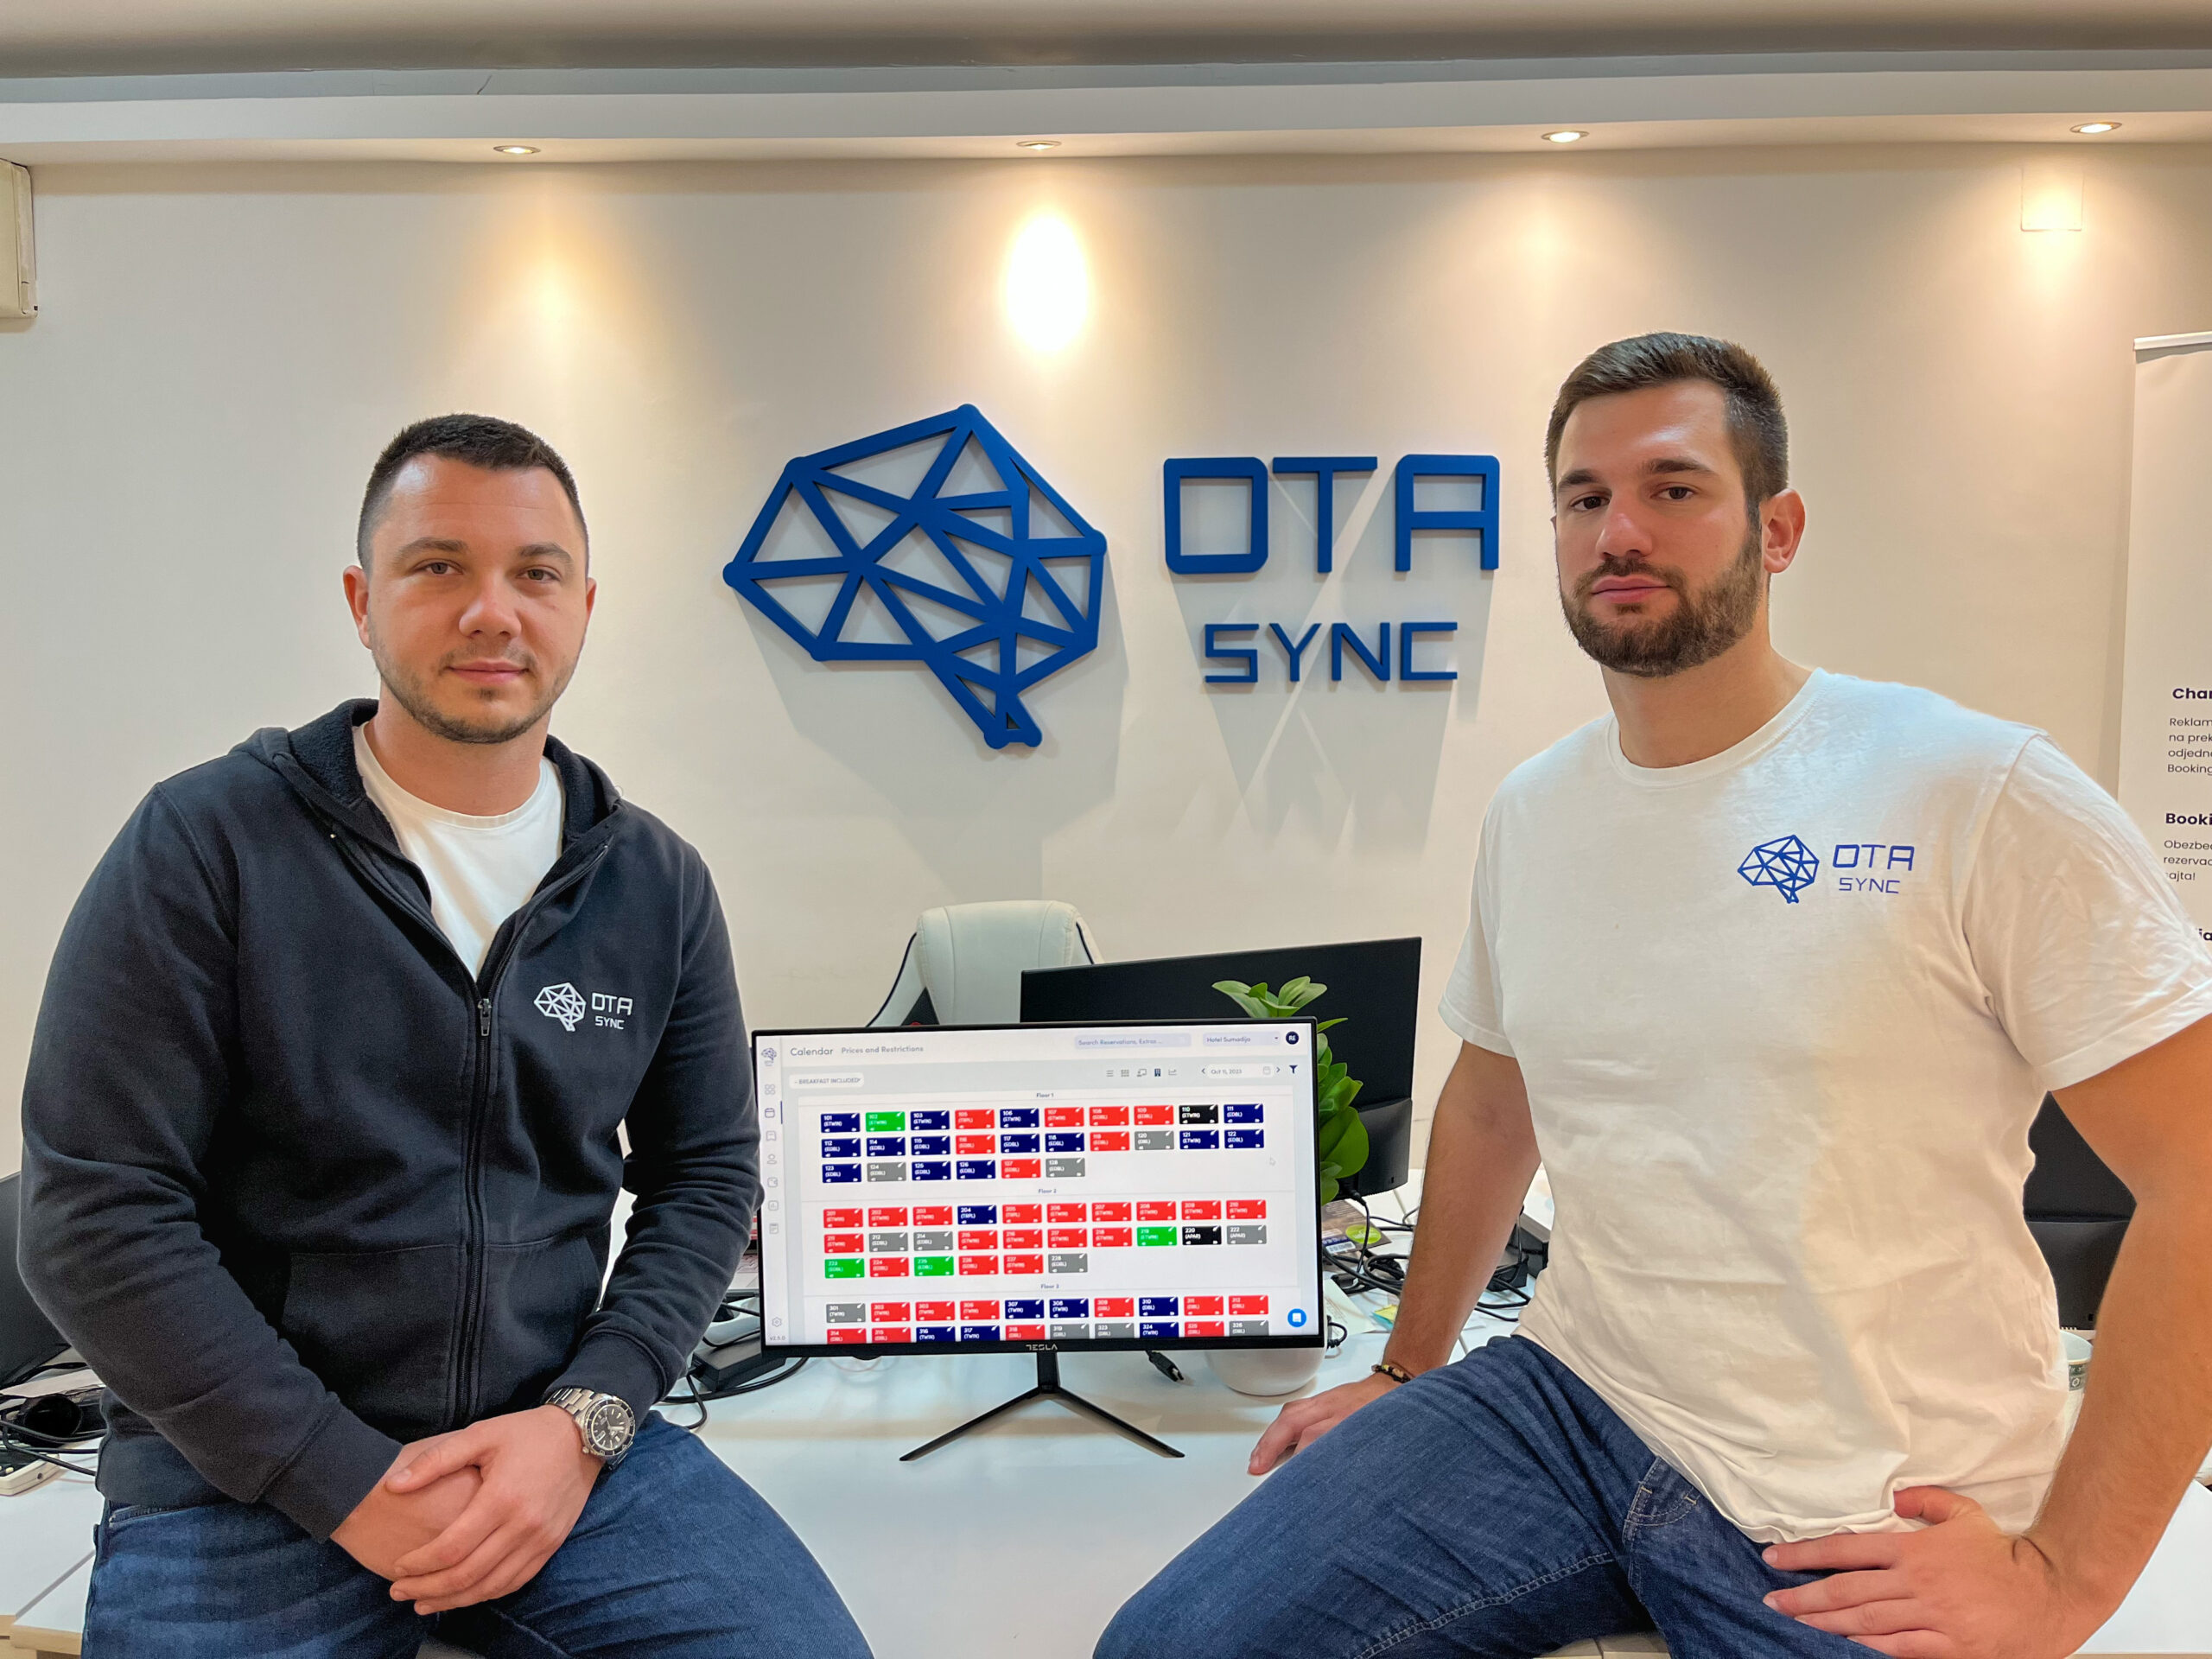 OTA Sync A Presto Ventures vezetésével 1.3 millió eurós International Seed kört zár